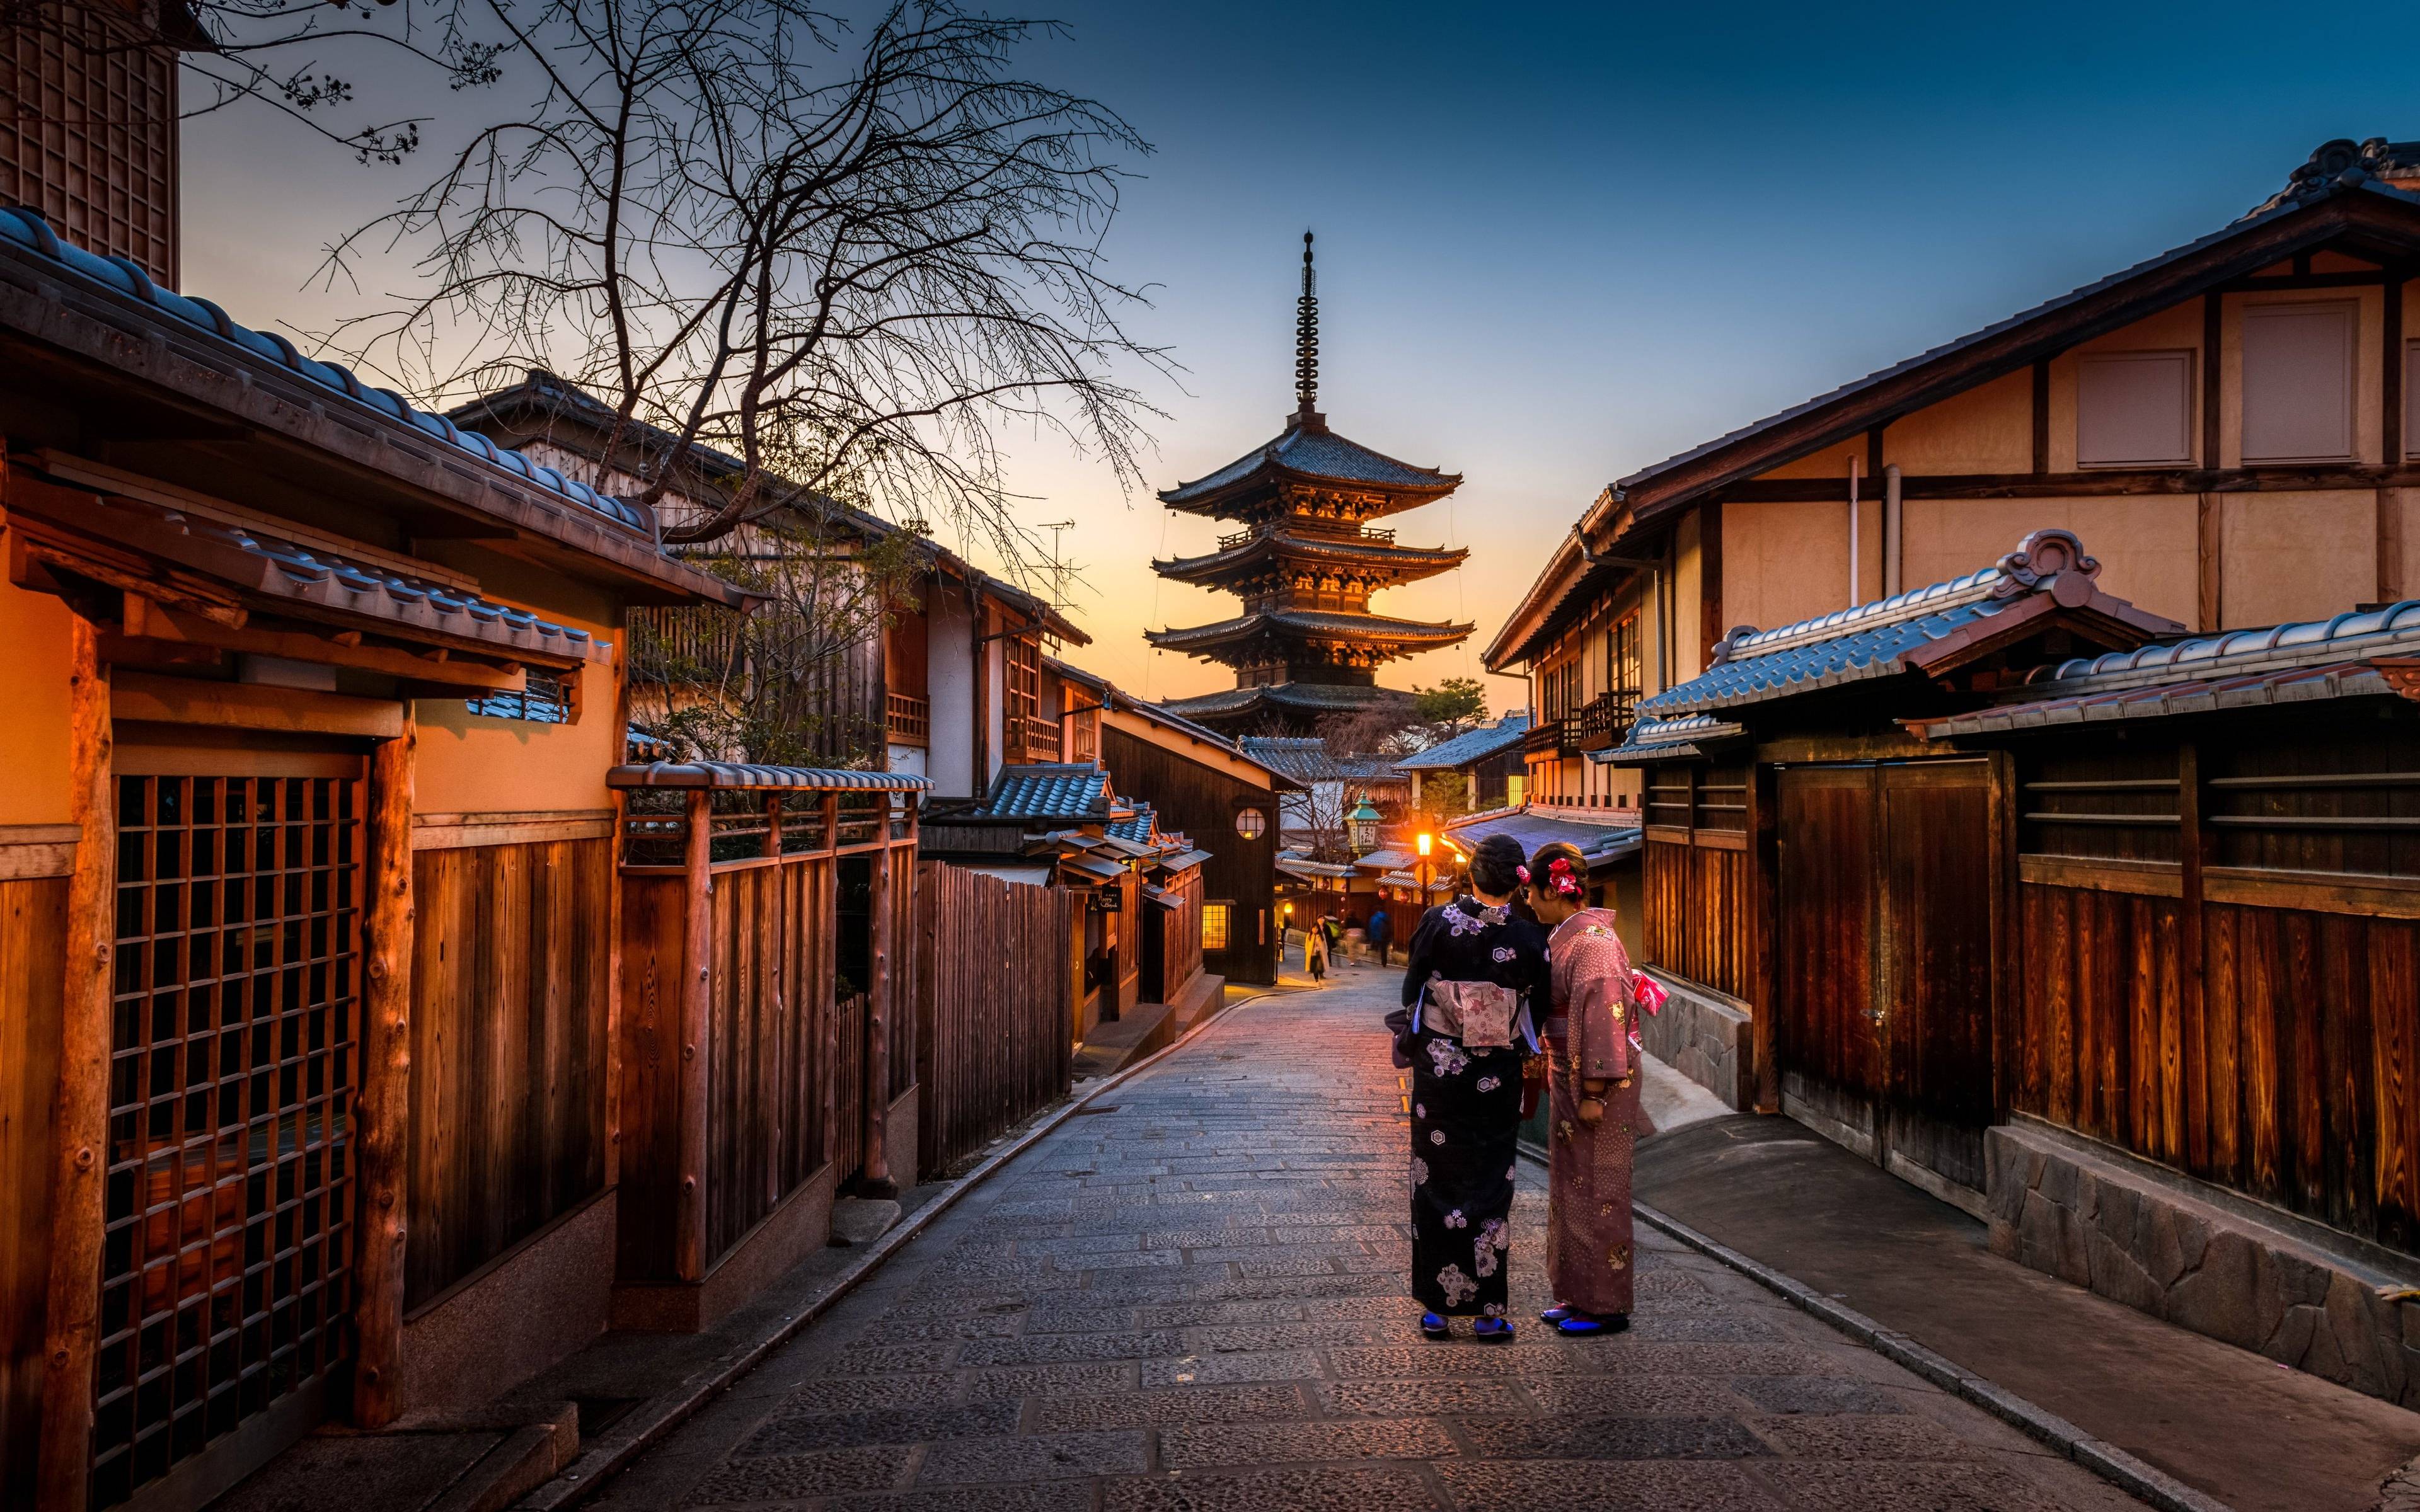 Viaggio verso il cuore delle antiche tradizioni: Kyoto e la magia della cerimonia del tè